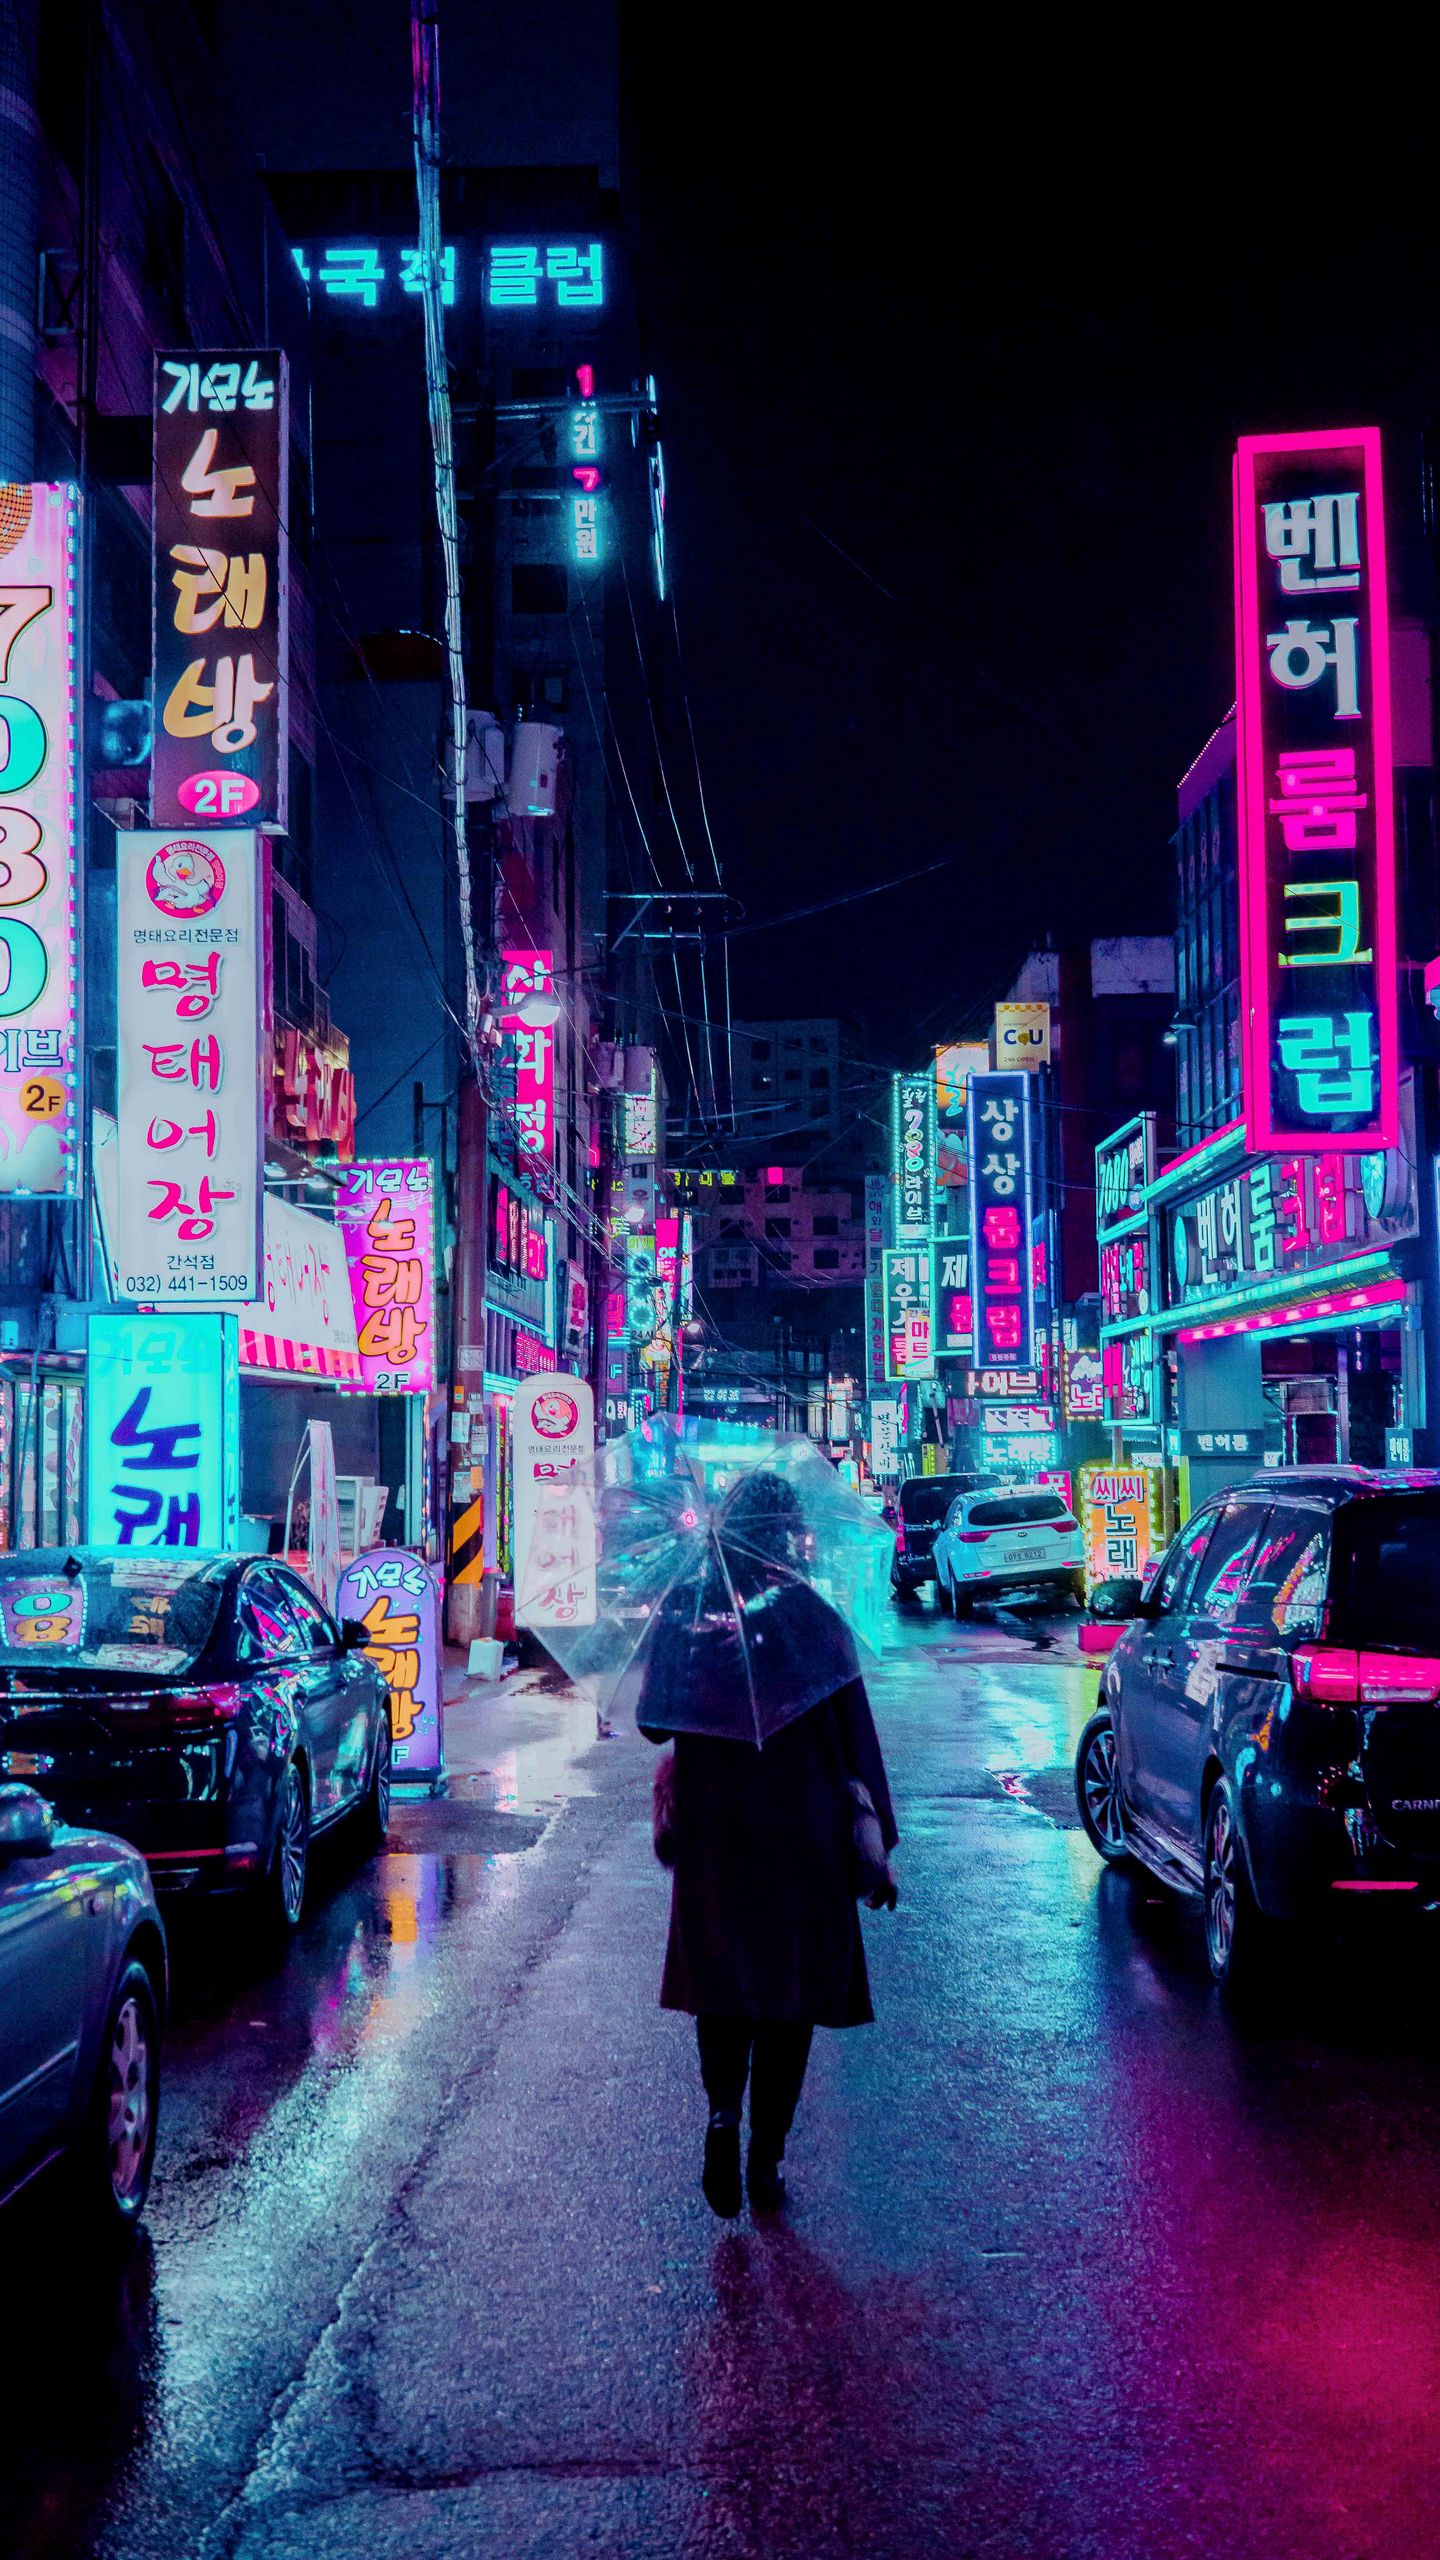 Download Ultrawide Cyberpunk Night City In The Rain Wallpaper